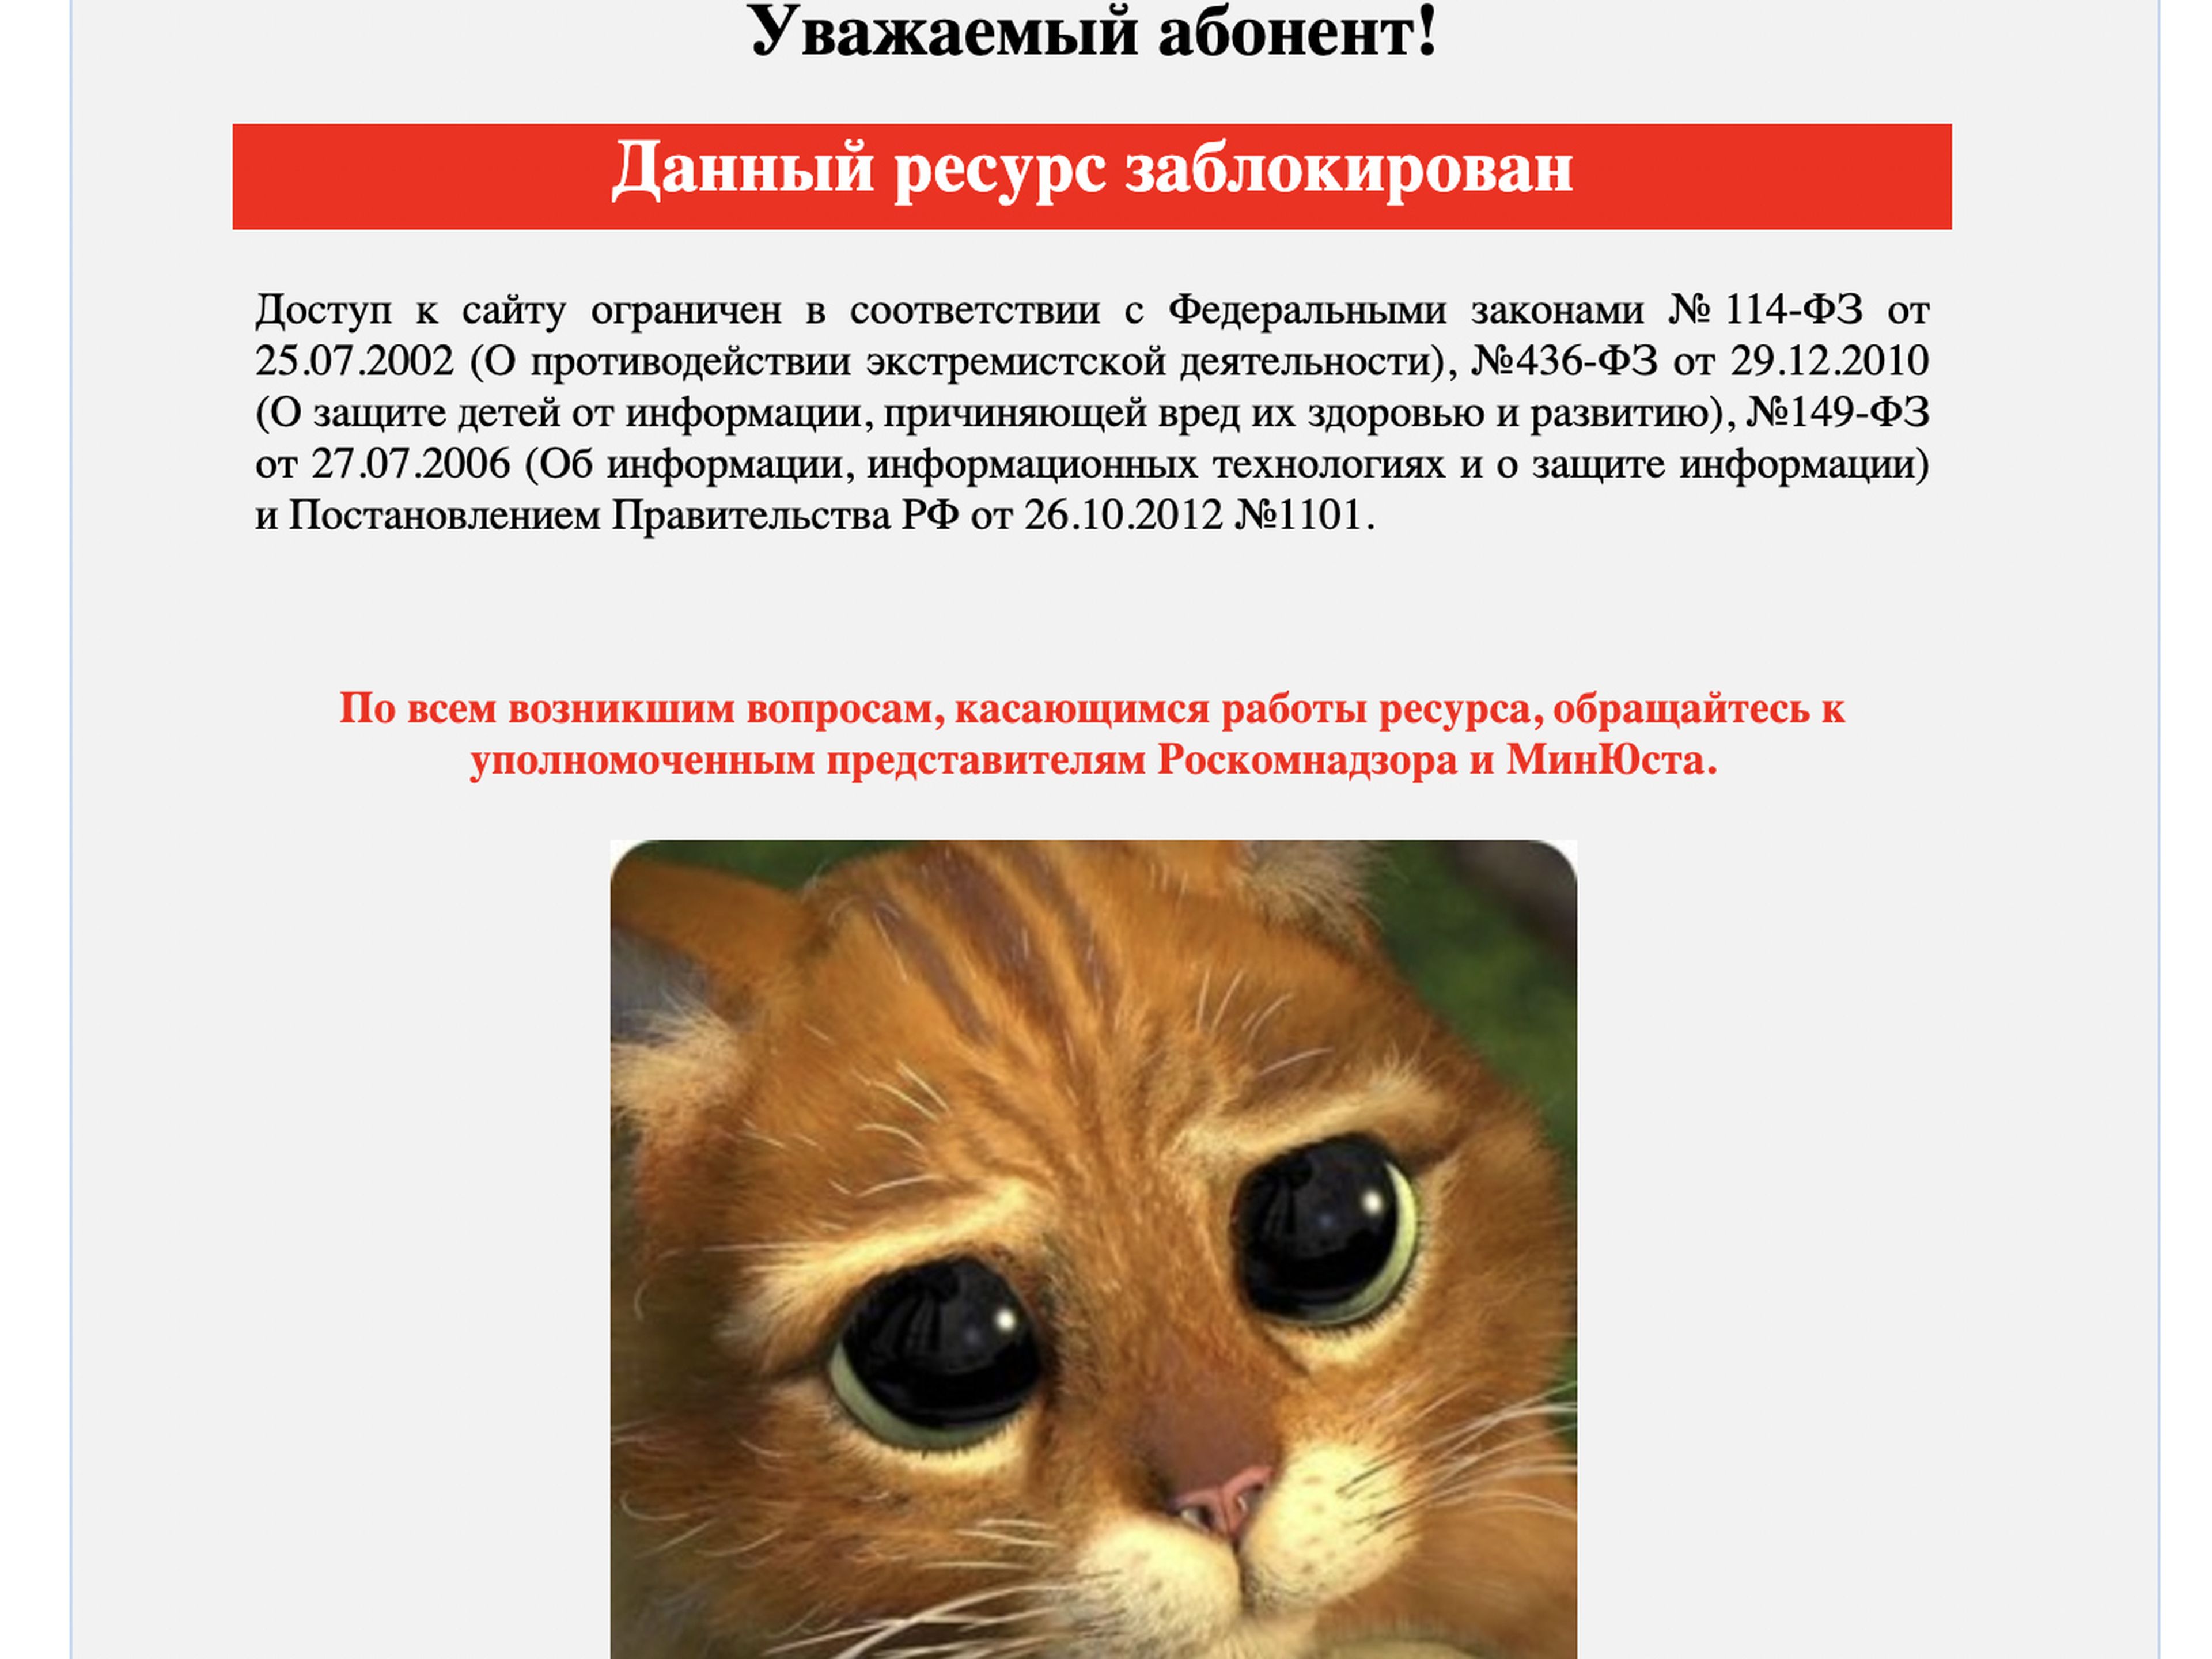 Mensaje de error para 'Current Time TV', un servicio de noticias independiente en Rusia que colabora con Radio Europa Libre.